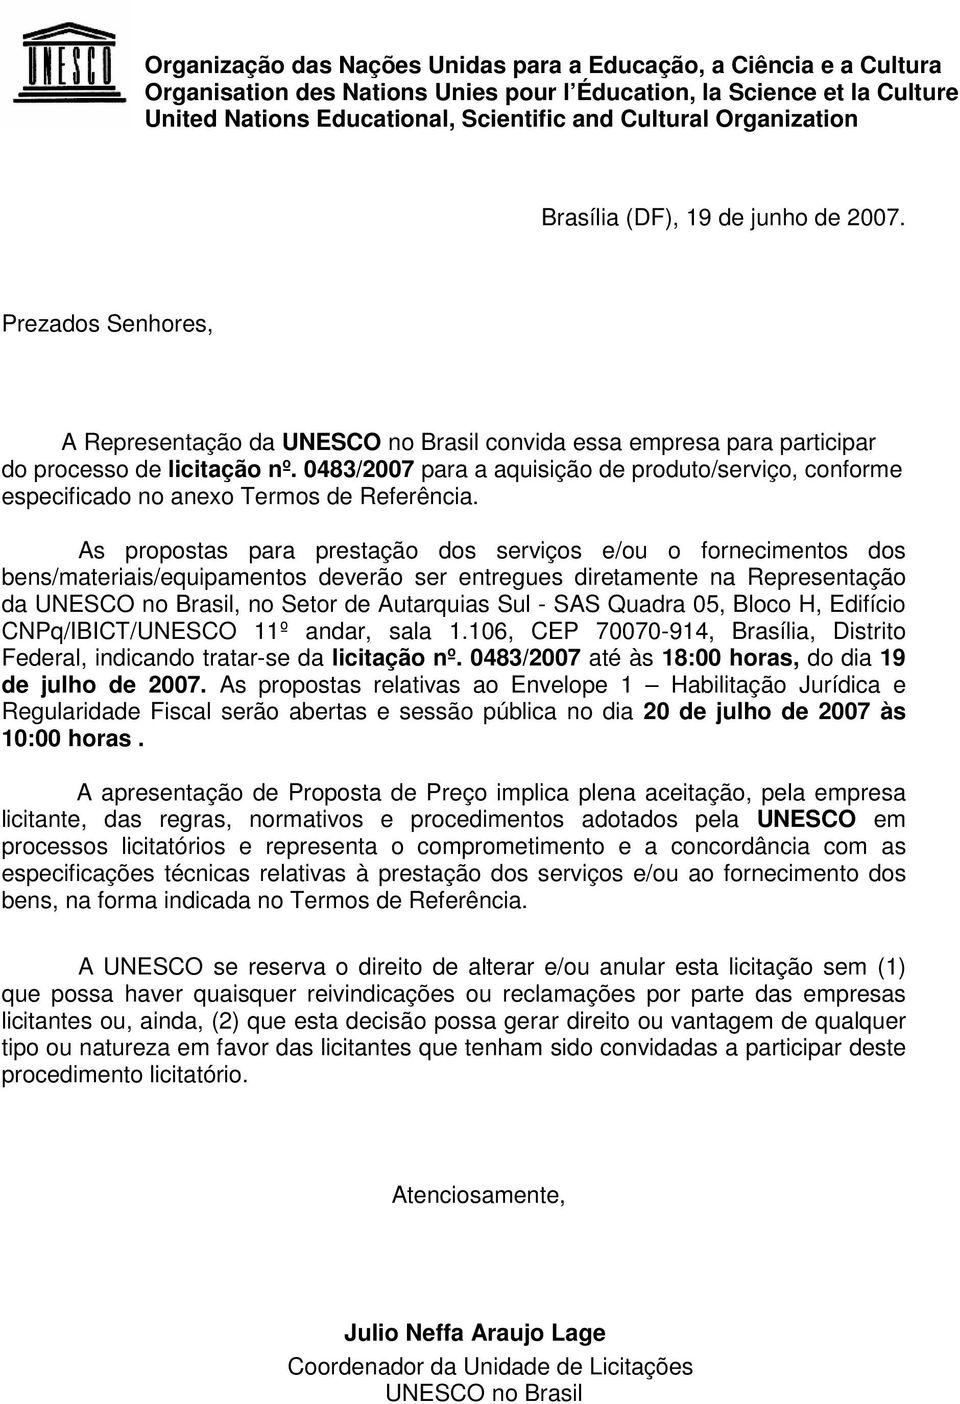 As propostas para prestação dos serviços e/ou o fornecimentos dos bens/materiais/equipamentos deverão ser entregues diretamente na Representação da UNESCO no Brasil, no Setor de Autarquias Sul - SAS